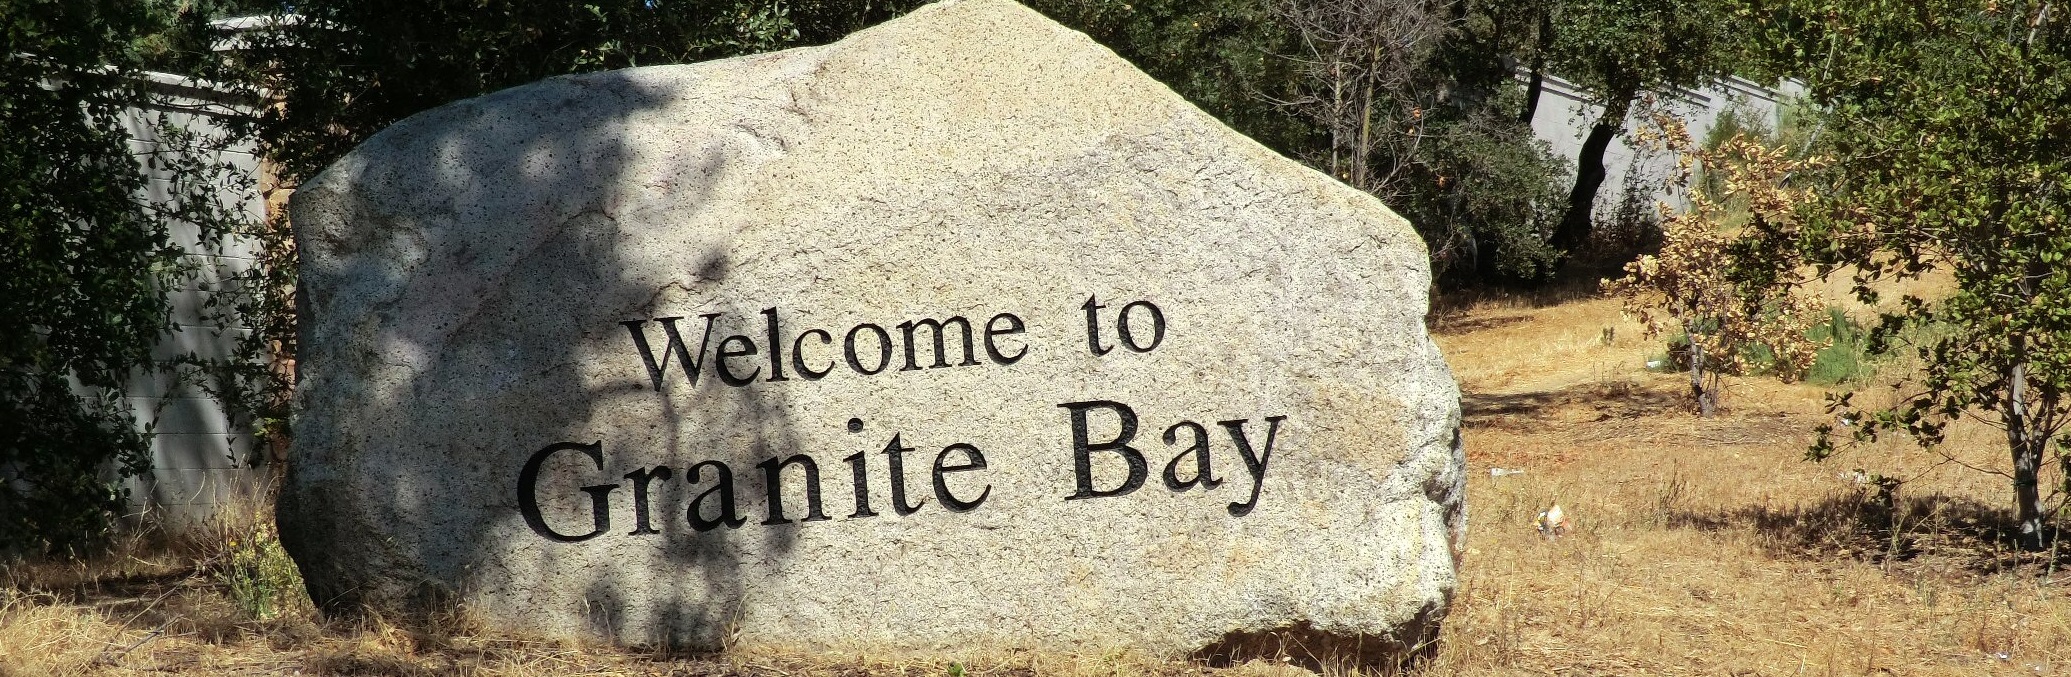 Service area - Granite Bay